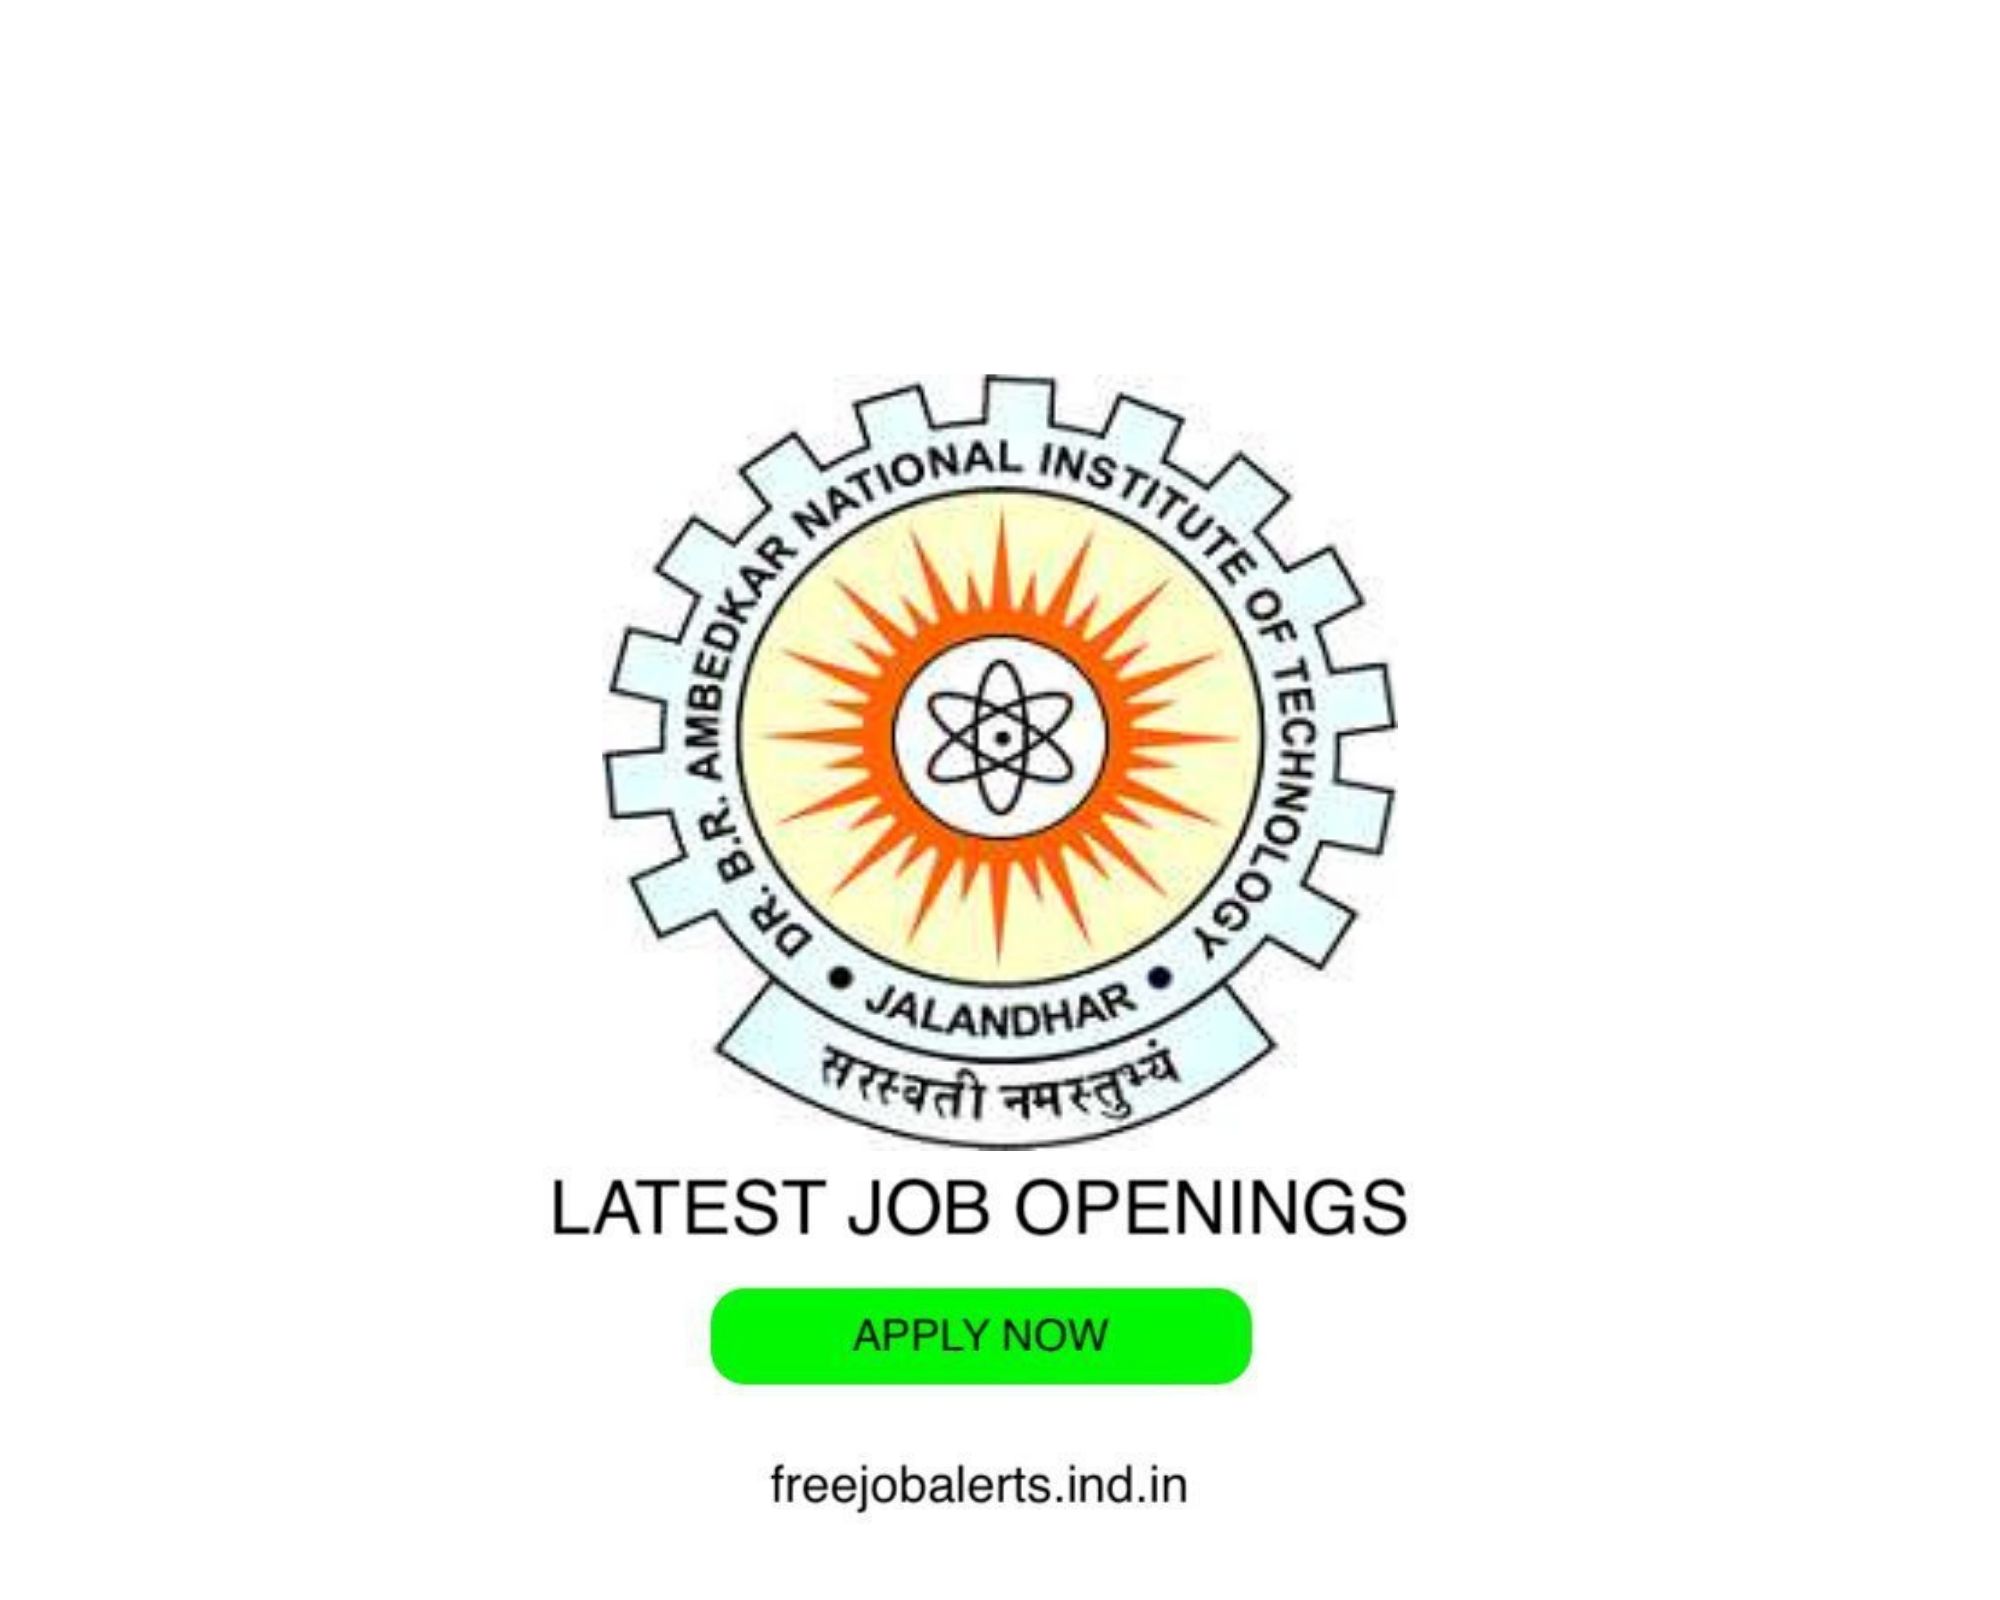 NIT Jalandhar- National Institute of Technology- Latest Govt job openings - Free job alerts, Indian Govt Jobs